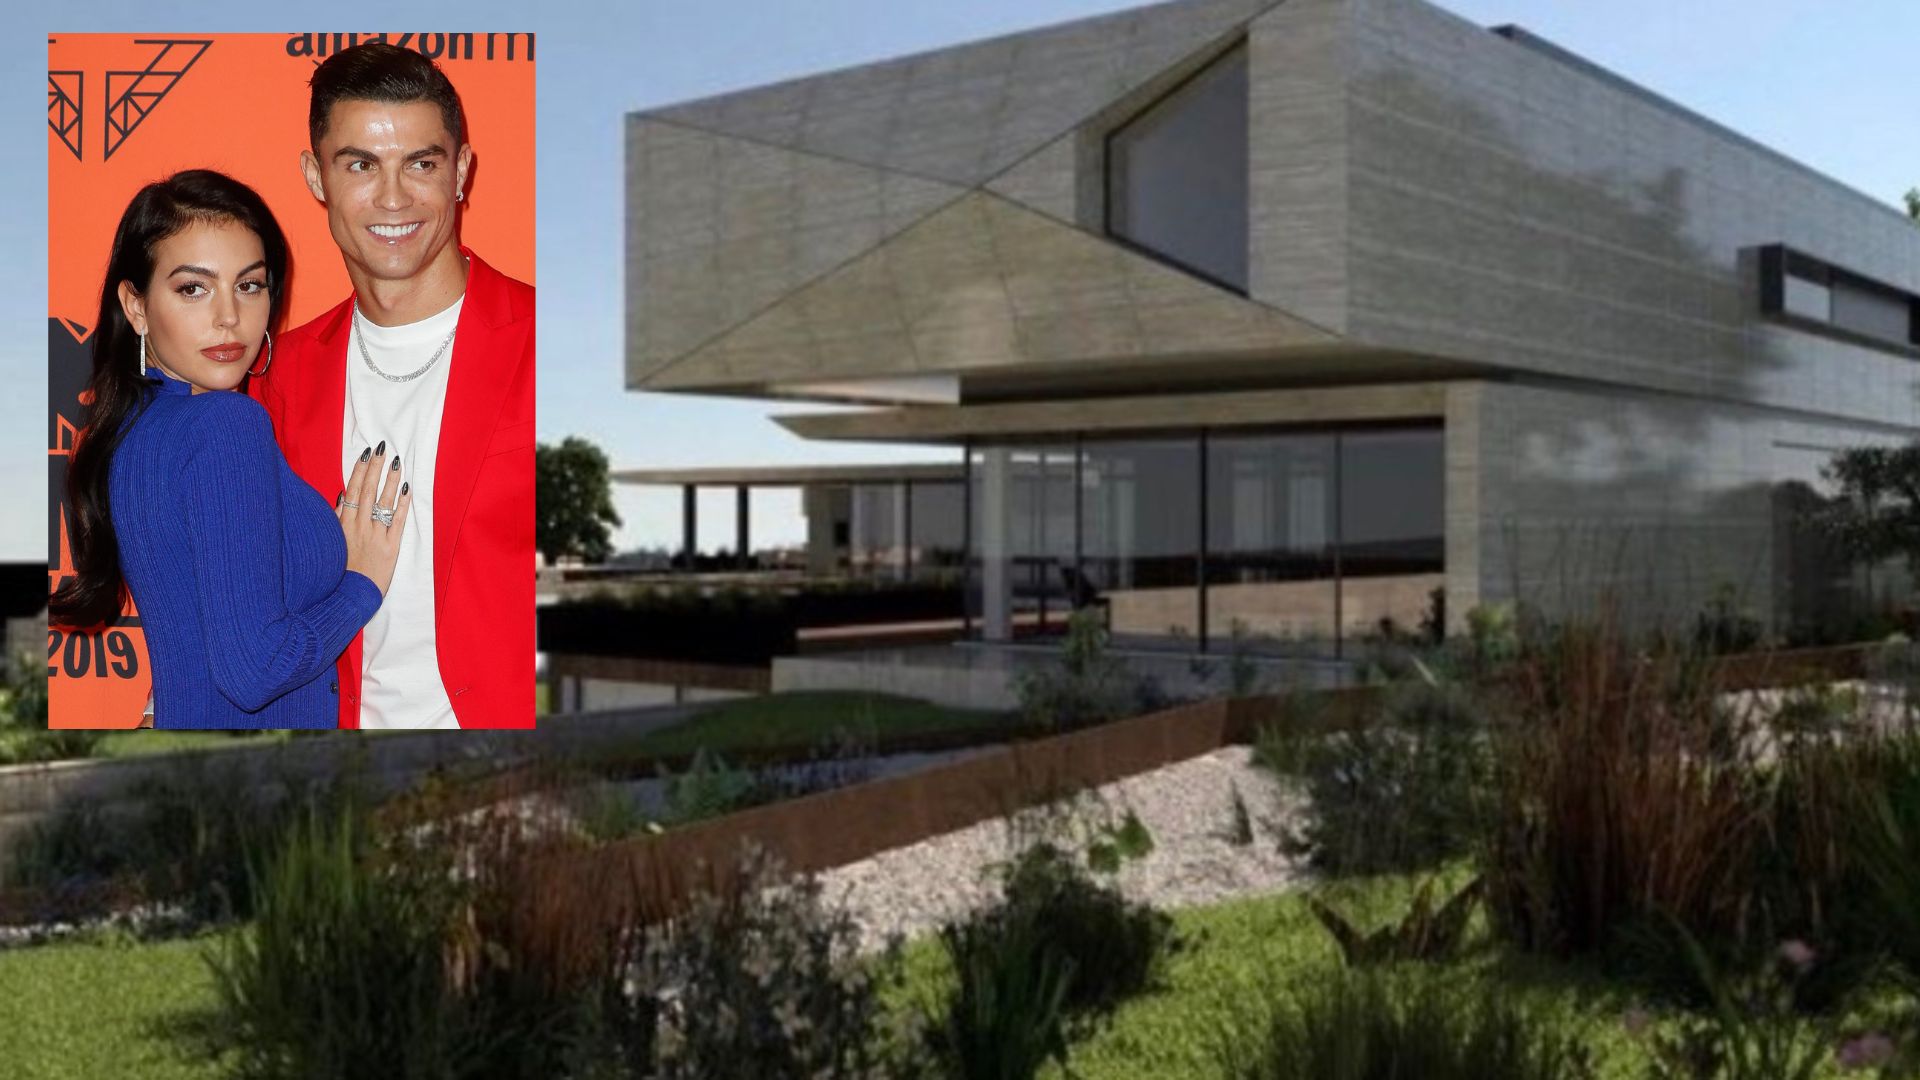 El suculento sueldo que Cristiano Ronaldo pagará a los trabajadores de su nueva casa en Portugal